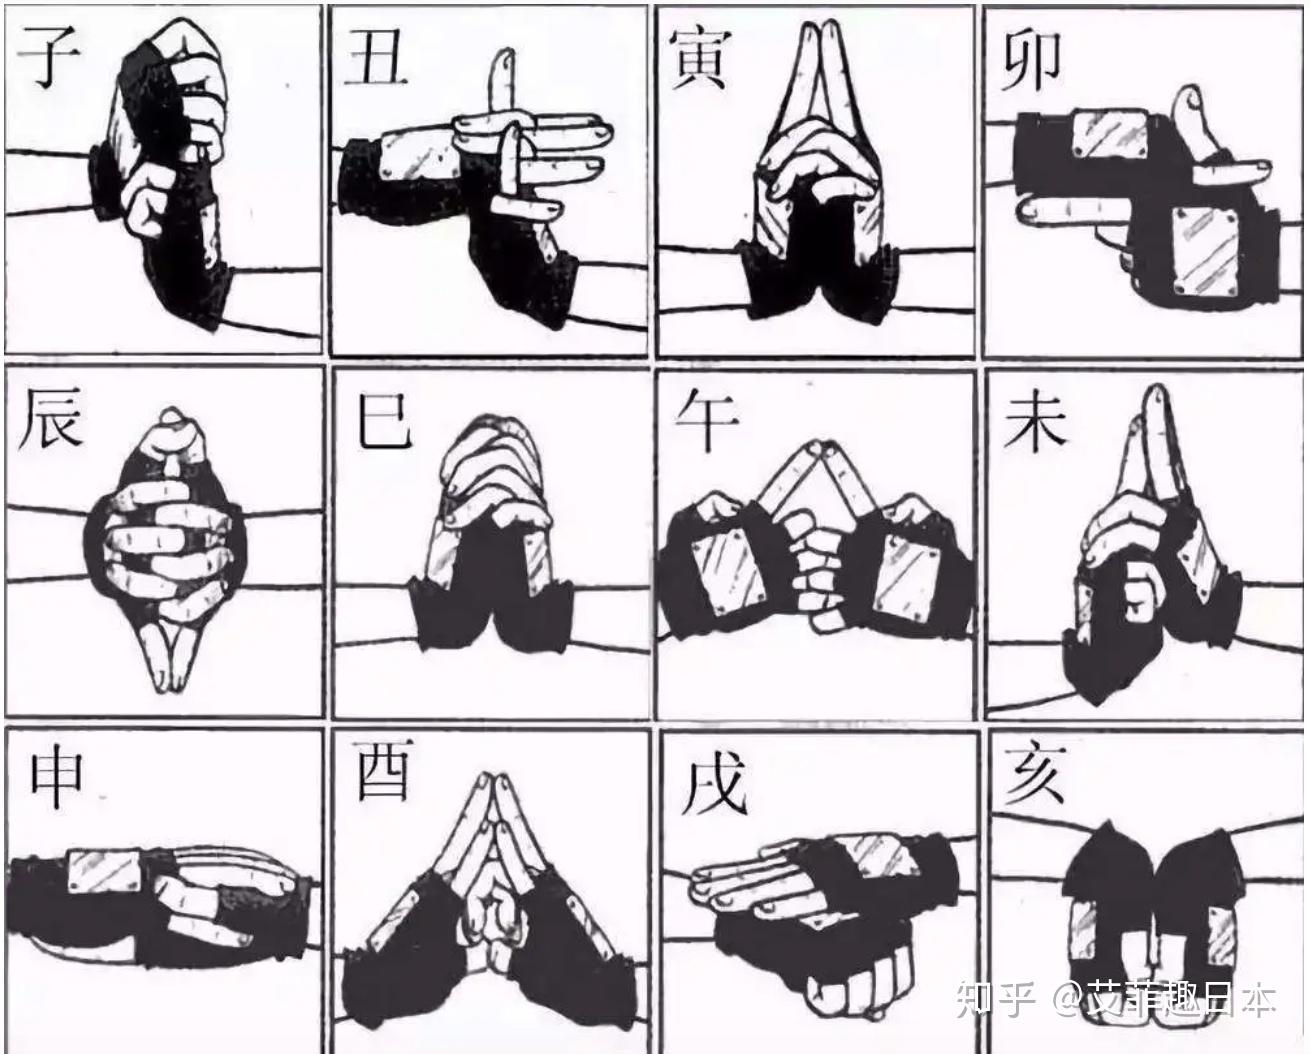 uzumaki, jinchuuriki, x, Uchiha Sasuke, hd, sasuke, uchiha, Naruto ...